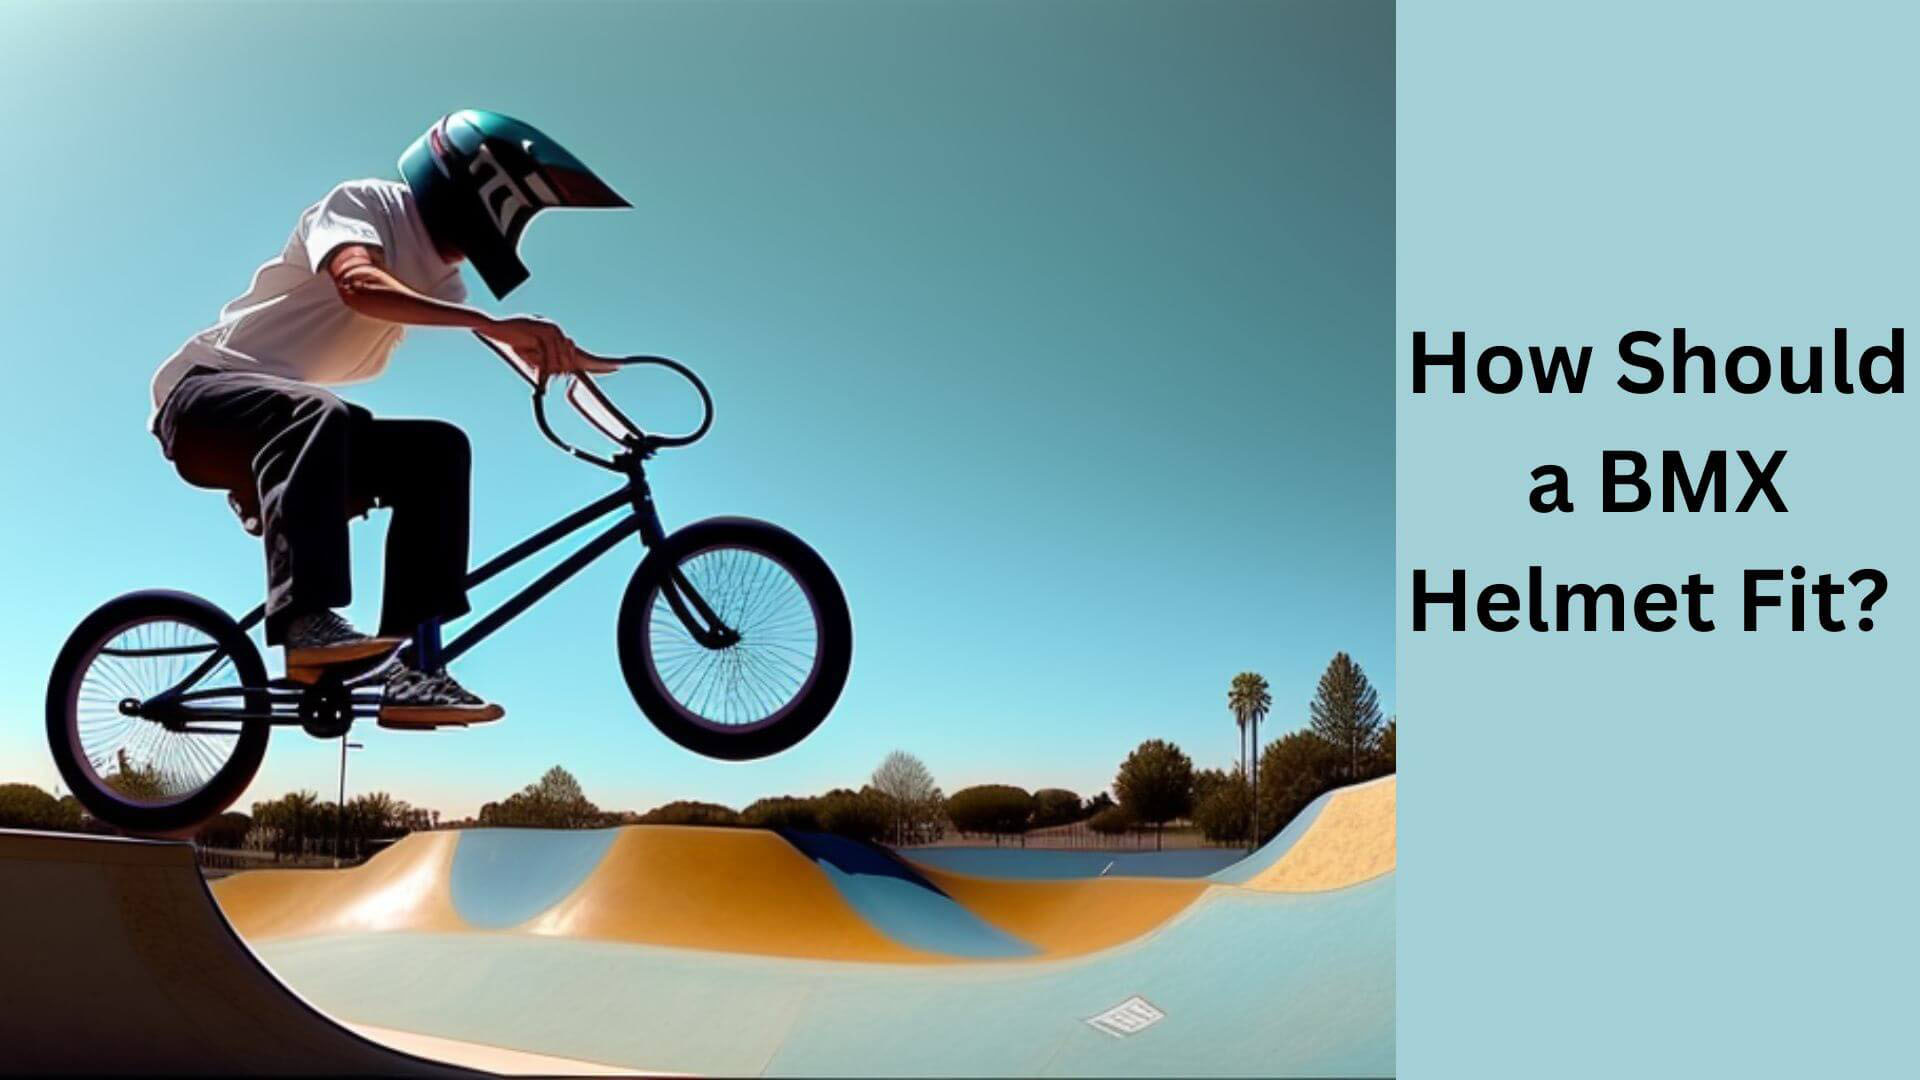 How Should a BMX Helmet Fit?